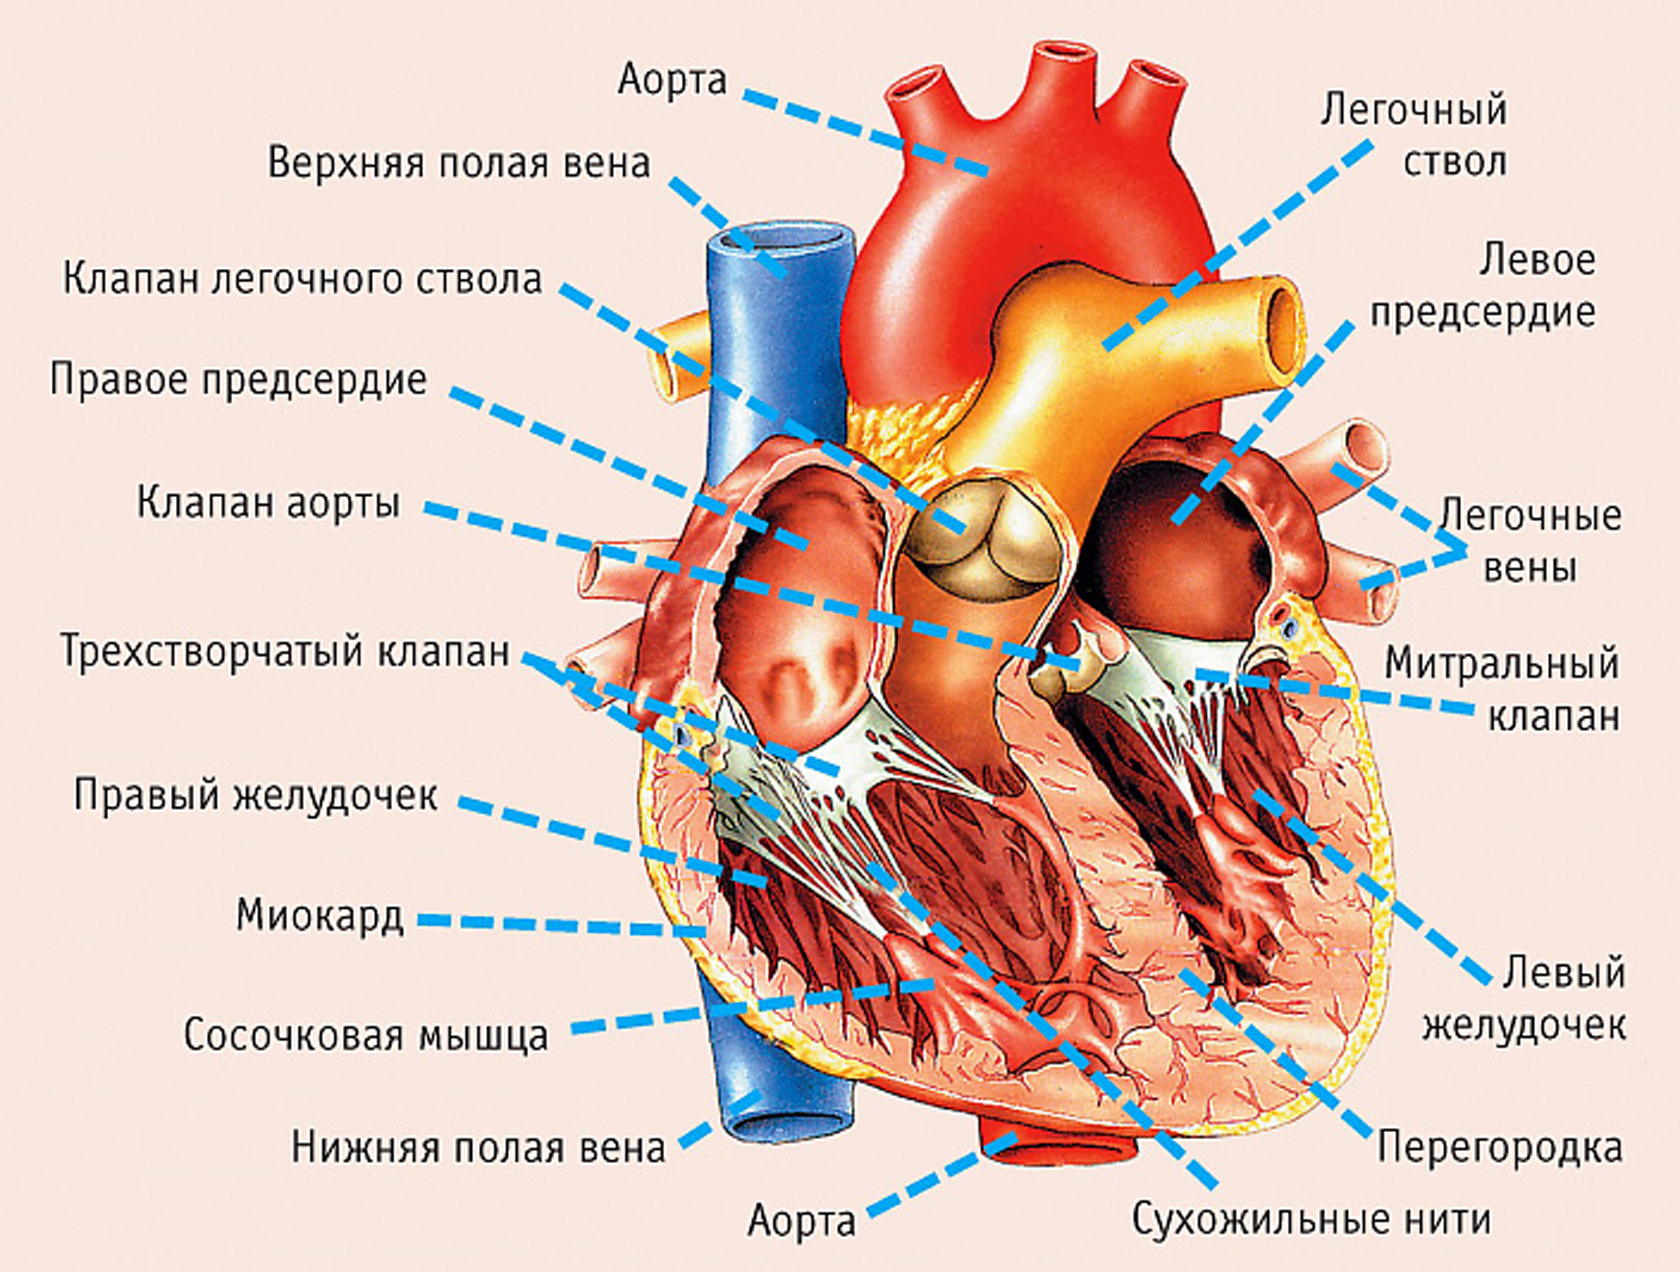 Анатомия сердца человека: историко-медицинский экскурс.